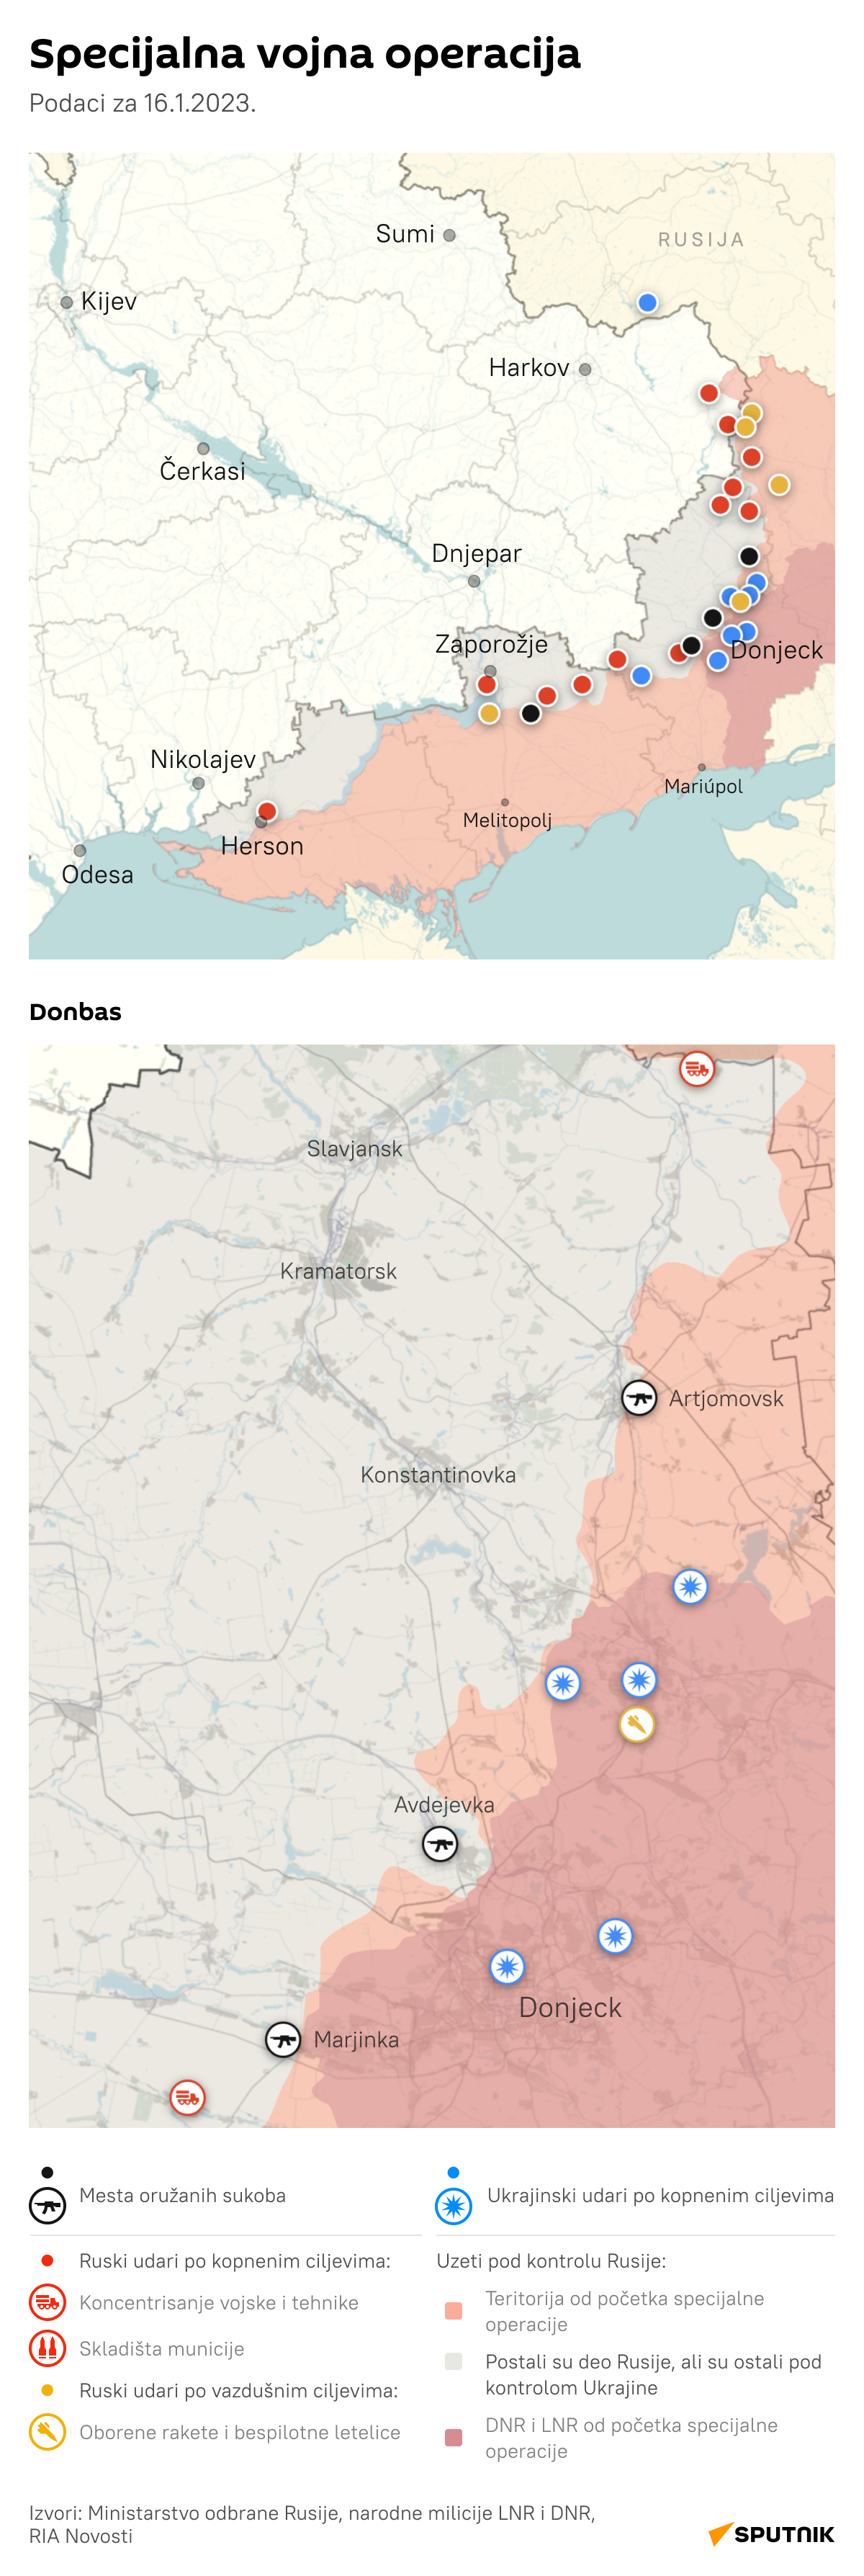 Infografika iz dana u dan: Trenutna vojna situacija u Ukrajini i Donbasu LATINICA desk 16.1.2023. - Sputnik Srbija